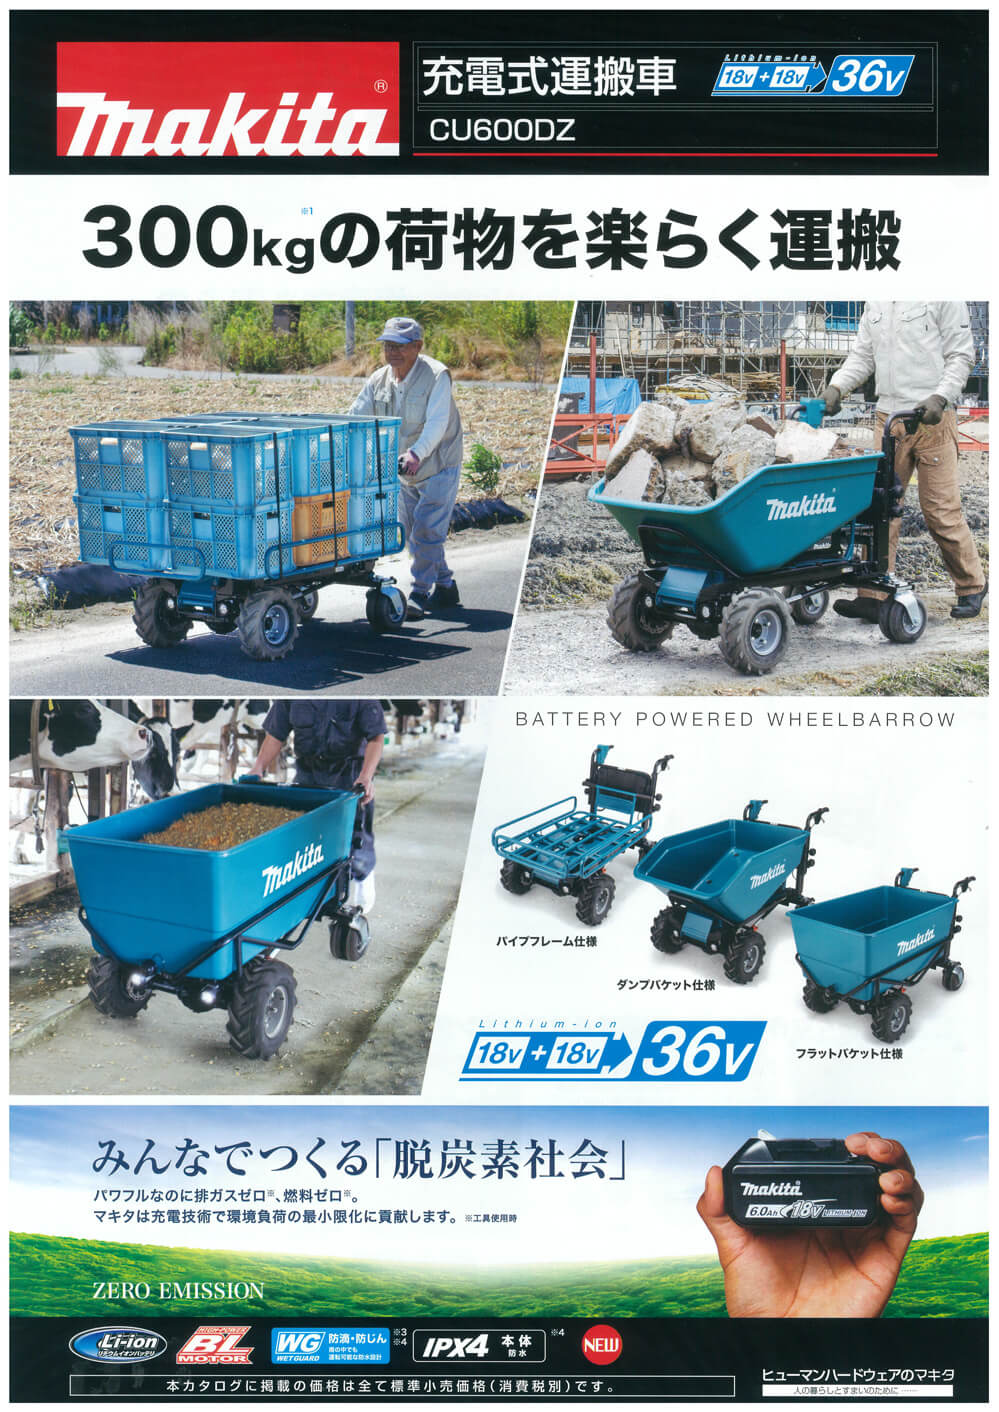 送料無料 マキタ 充電式運搬車用 バケットセット品 A-65486